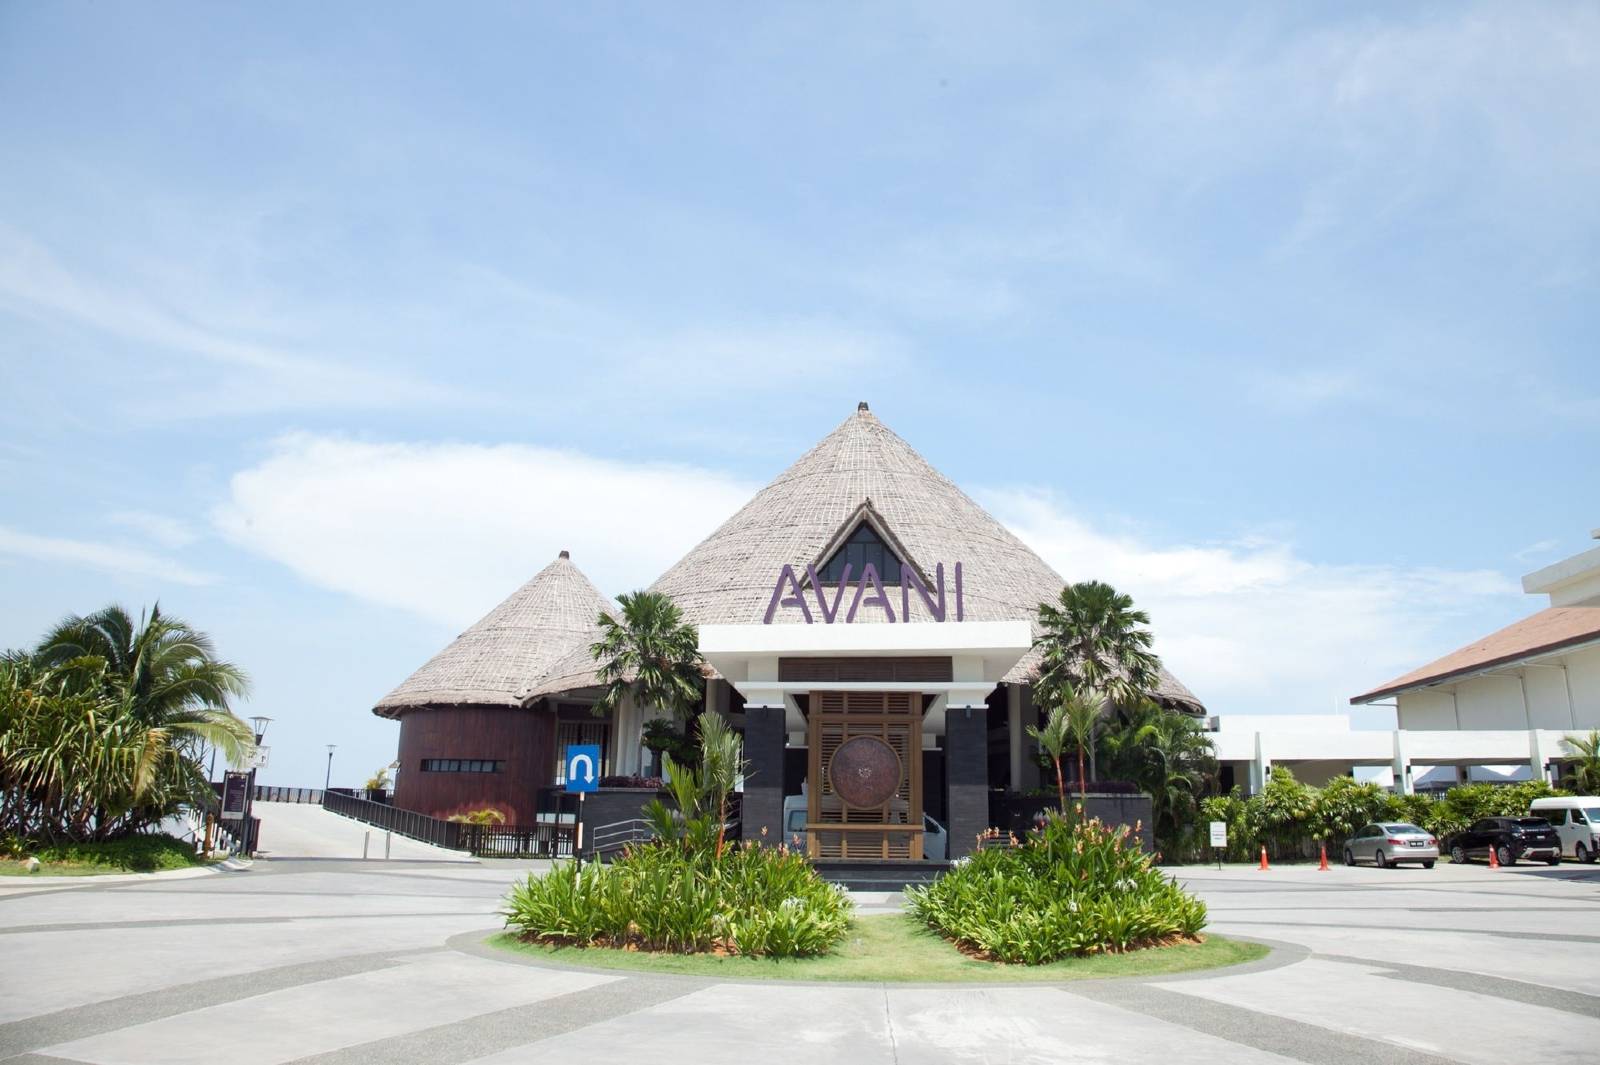 超值套餐·马来西亚雪邦黄金海岸阿瓦尼度假酒店/吉隆坡黄金棕榈度假